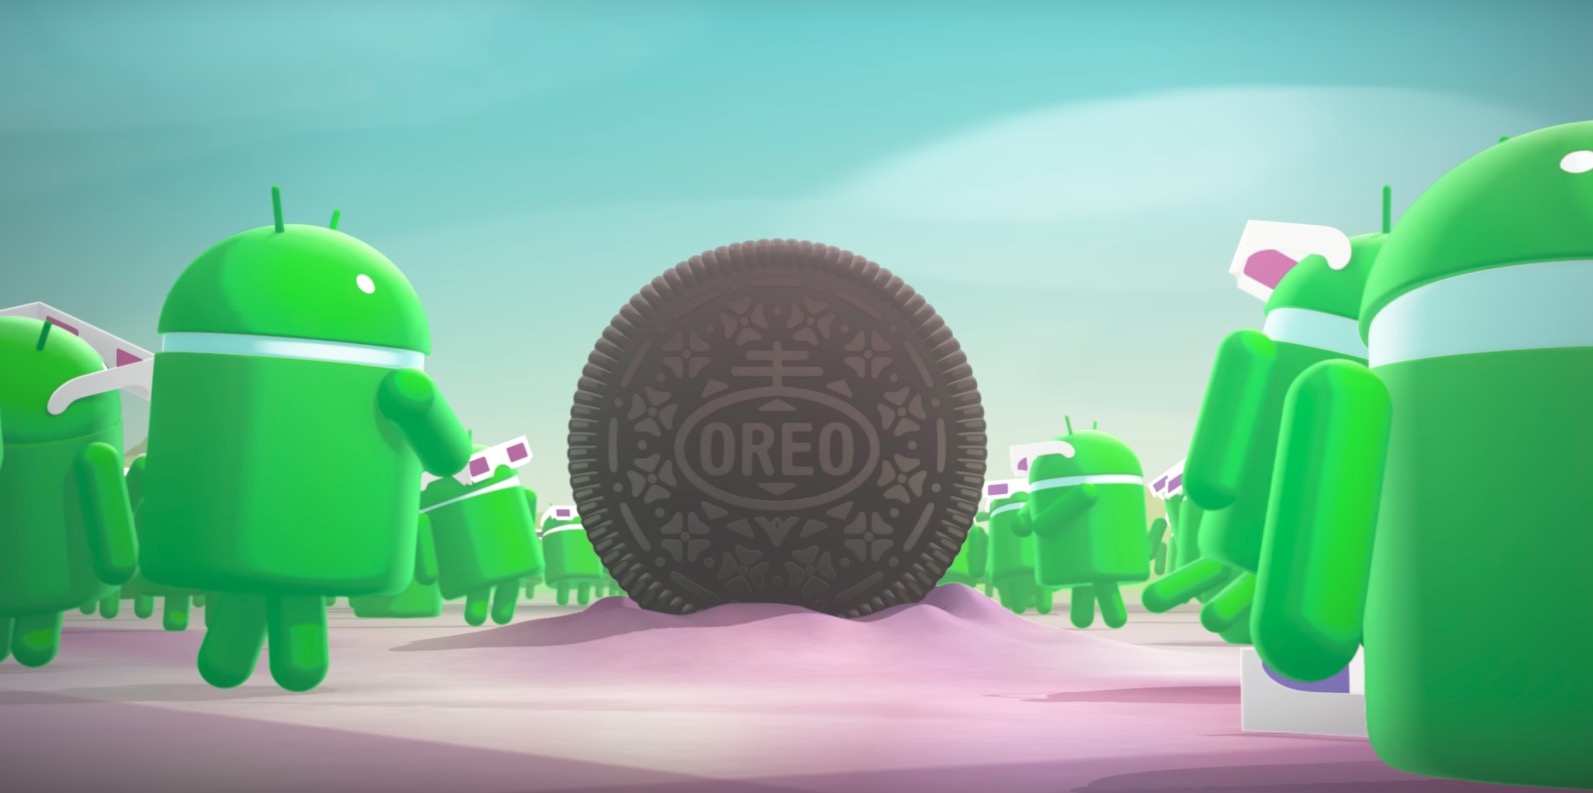 Android Oreo hero